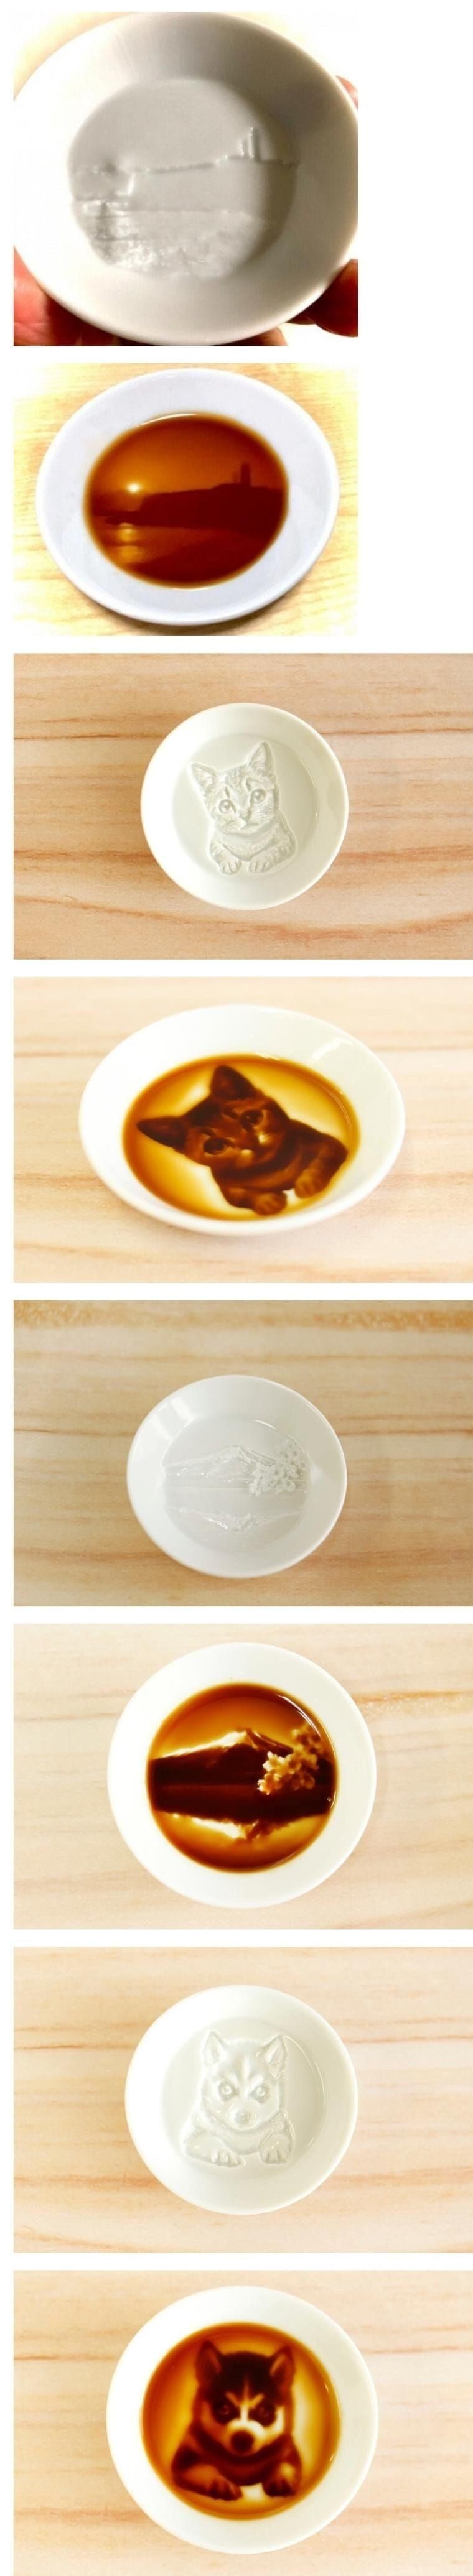 일본에서 판매하는 간장 접시